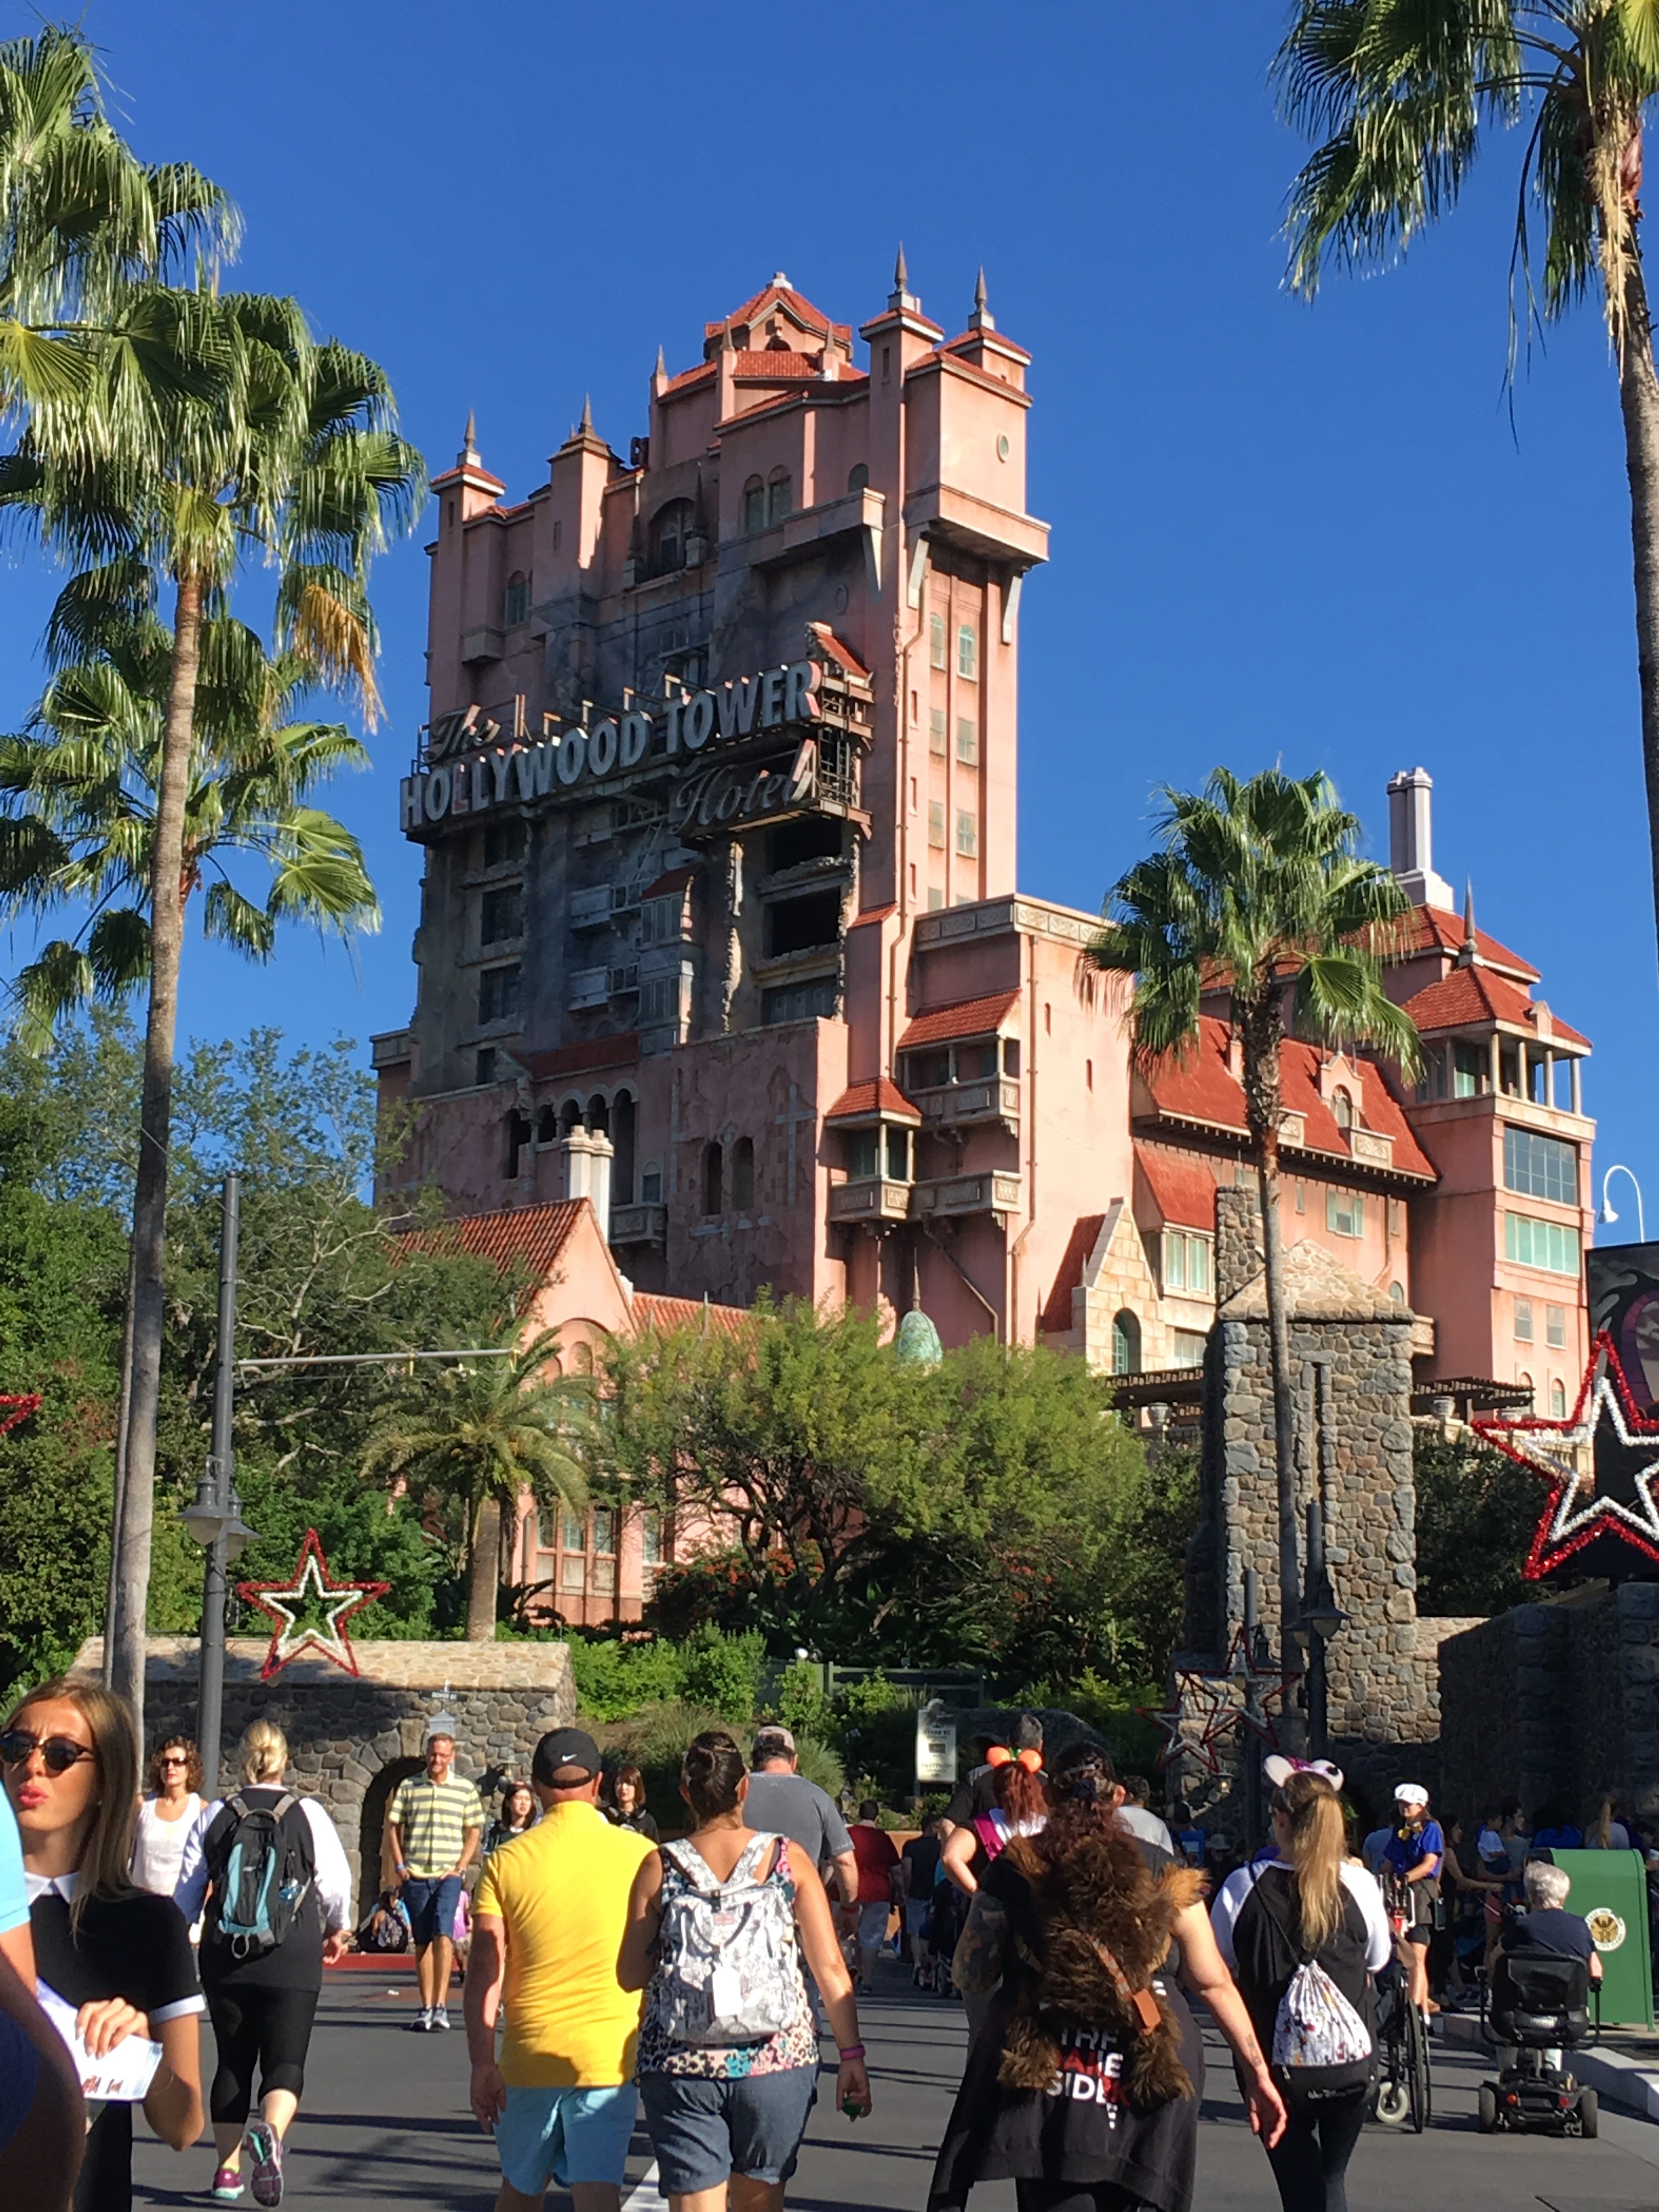 トワイライトゾーン・タワー・オブ・テラー The Twilight Zone Tower of Terror/ディズニー・ハリウッド・スタジオ Disney's Hollywood Studios/ディズニー・ワールド・リゾート 旅行記 Walt Disney World Resort/(2018/11/1)